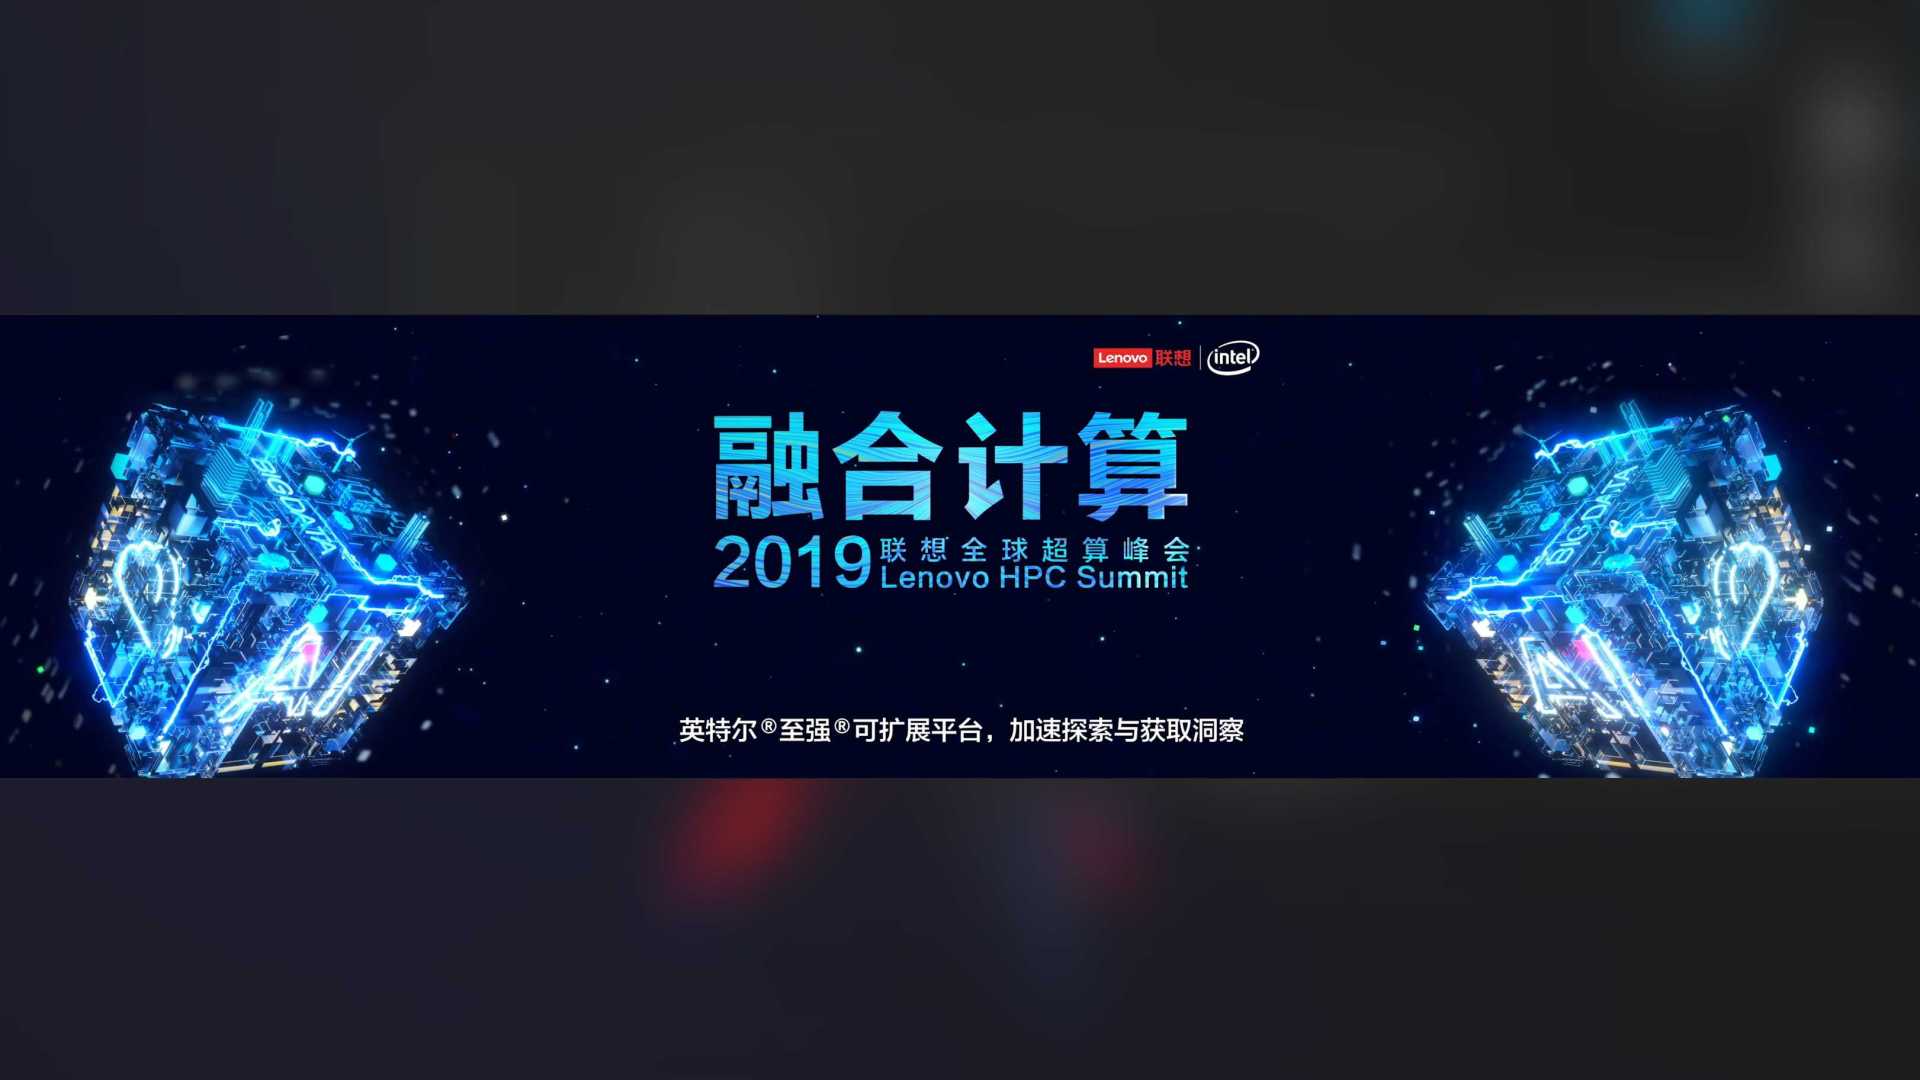 2019联想超算峰会opening